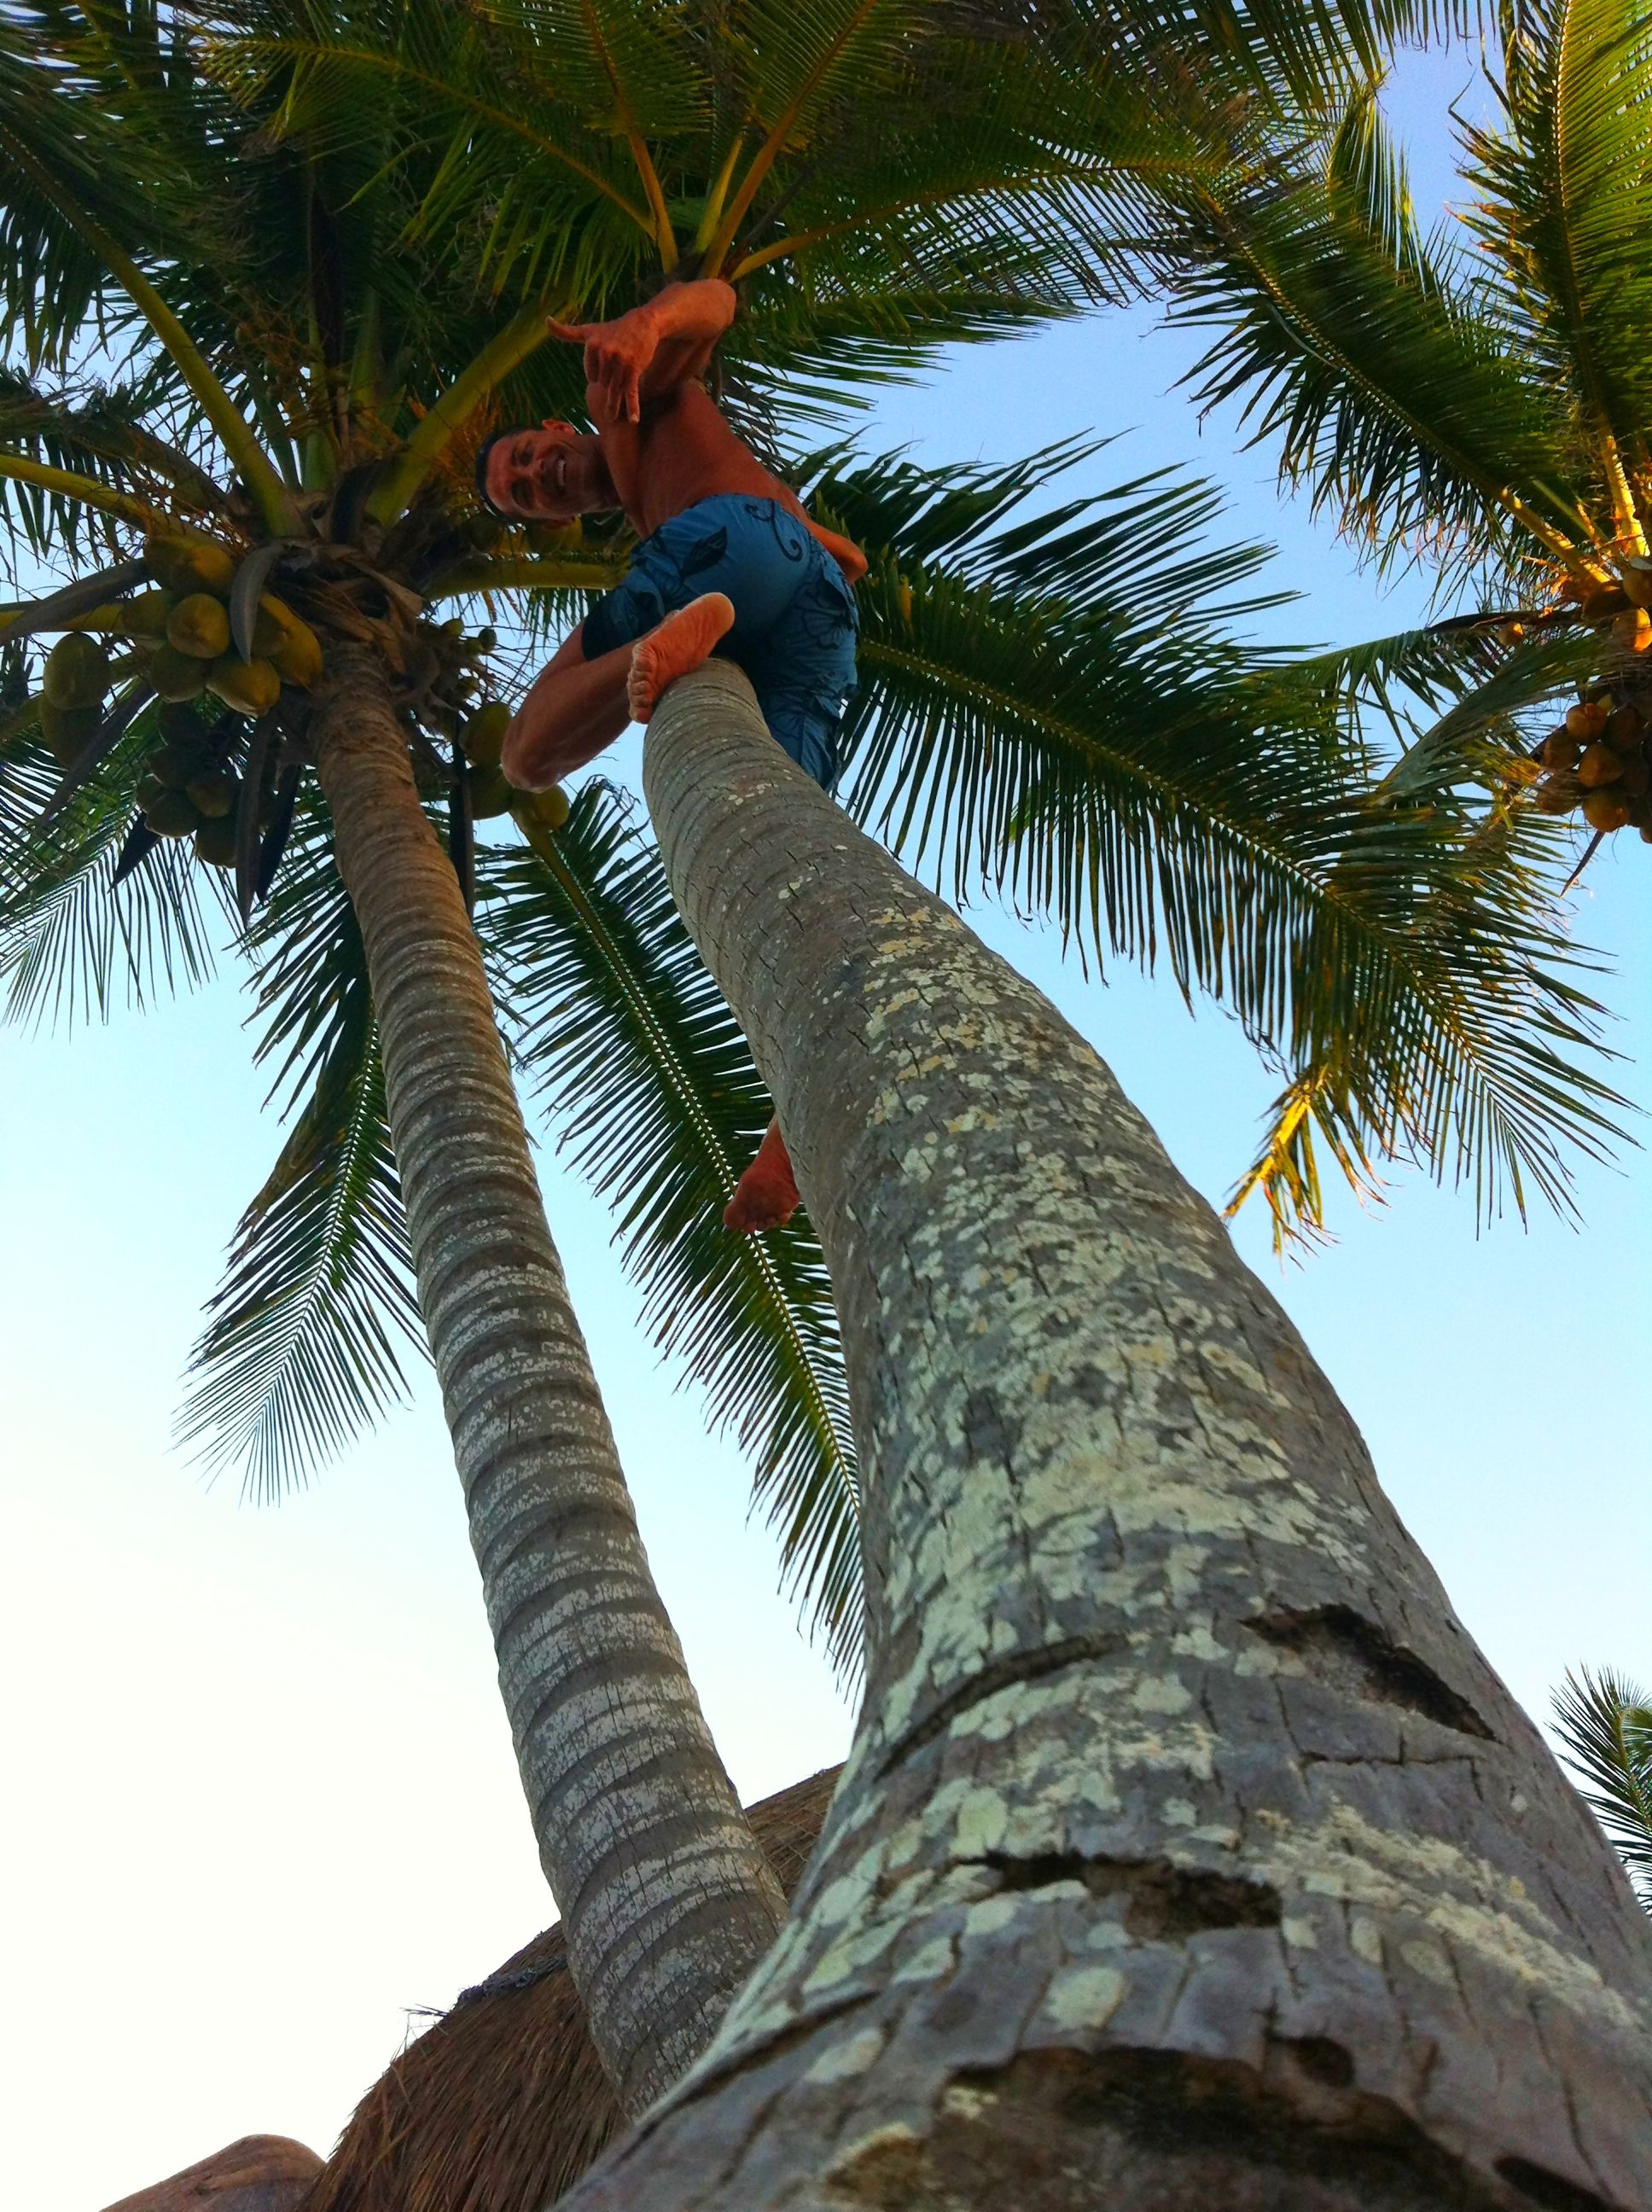 Randy in Coconut tree.JPG